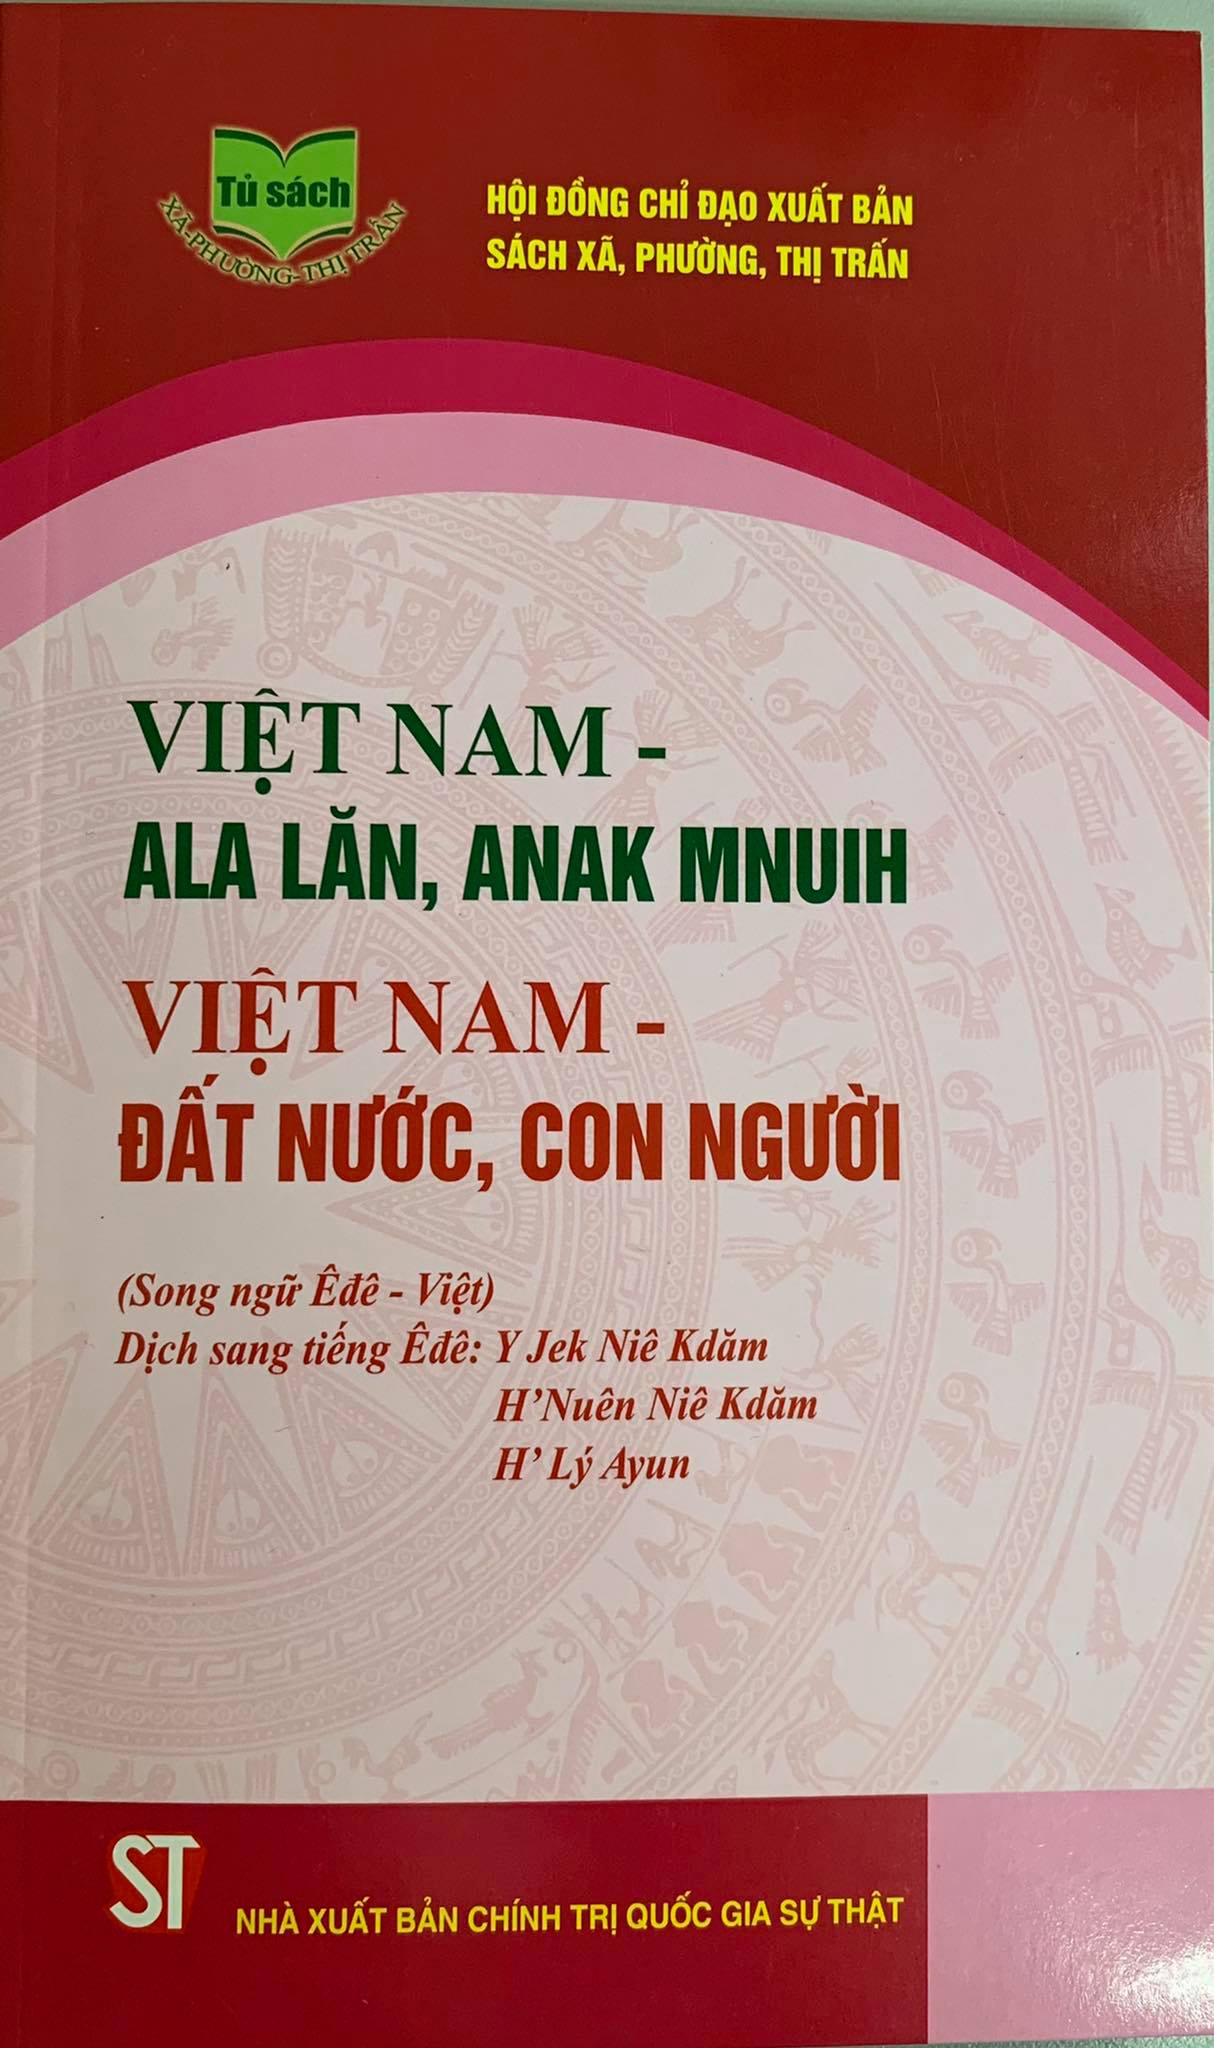 Việt Nam - đất nước, con người (Song ngữ Êđê - Việt)